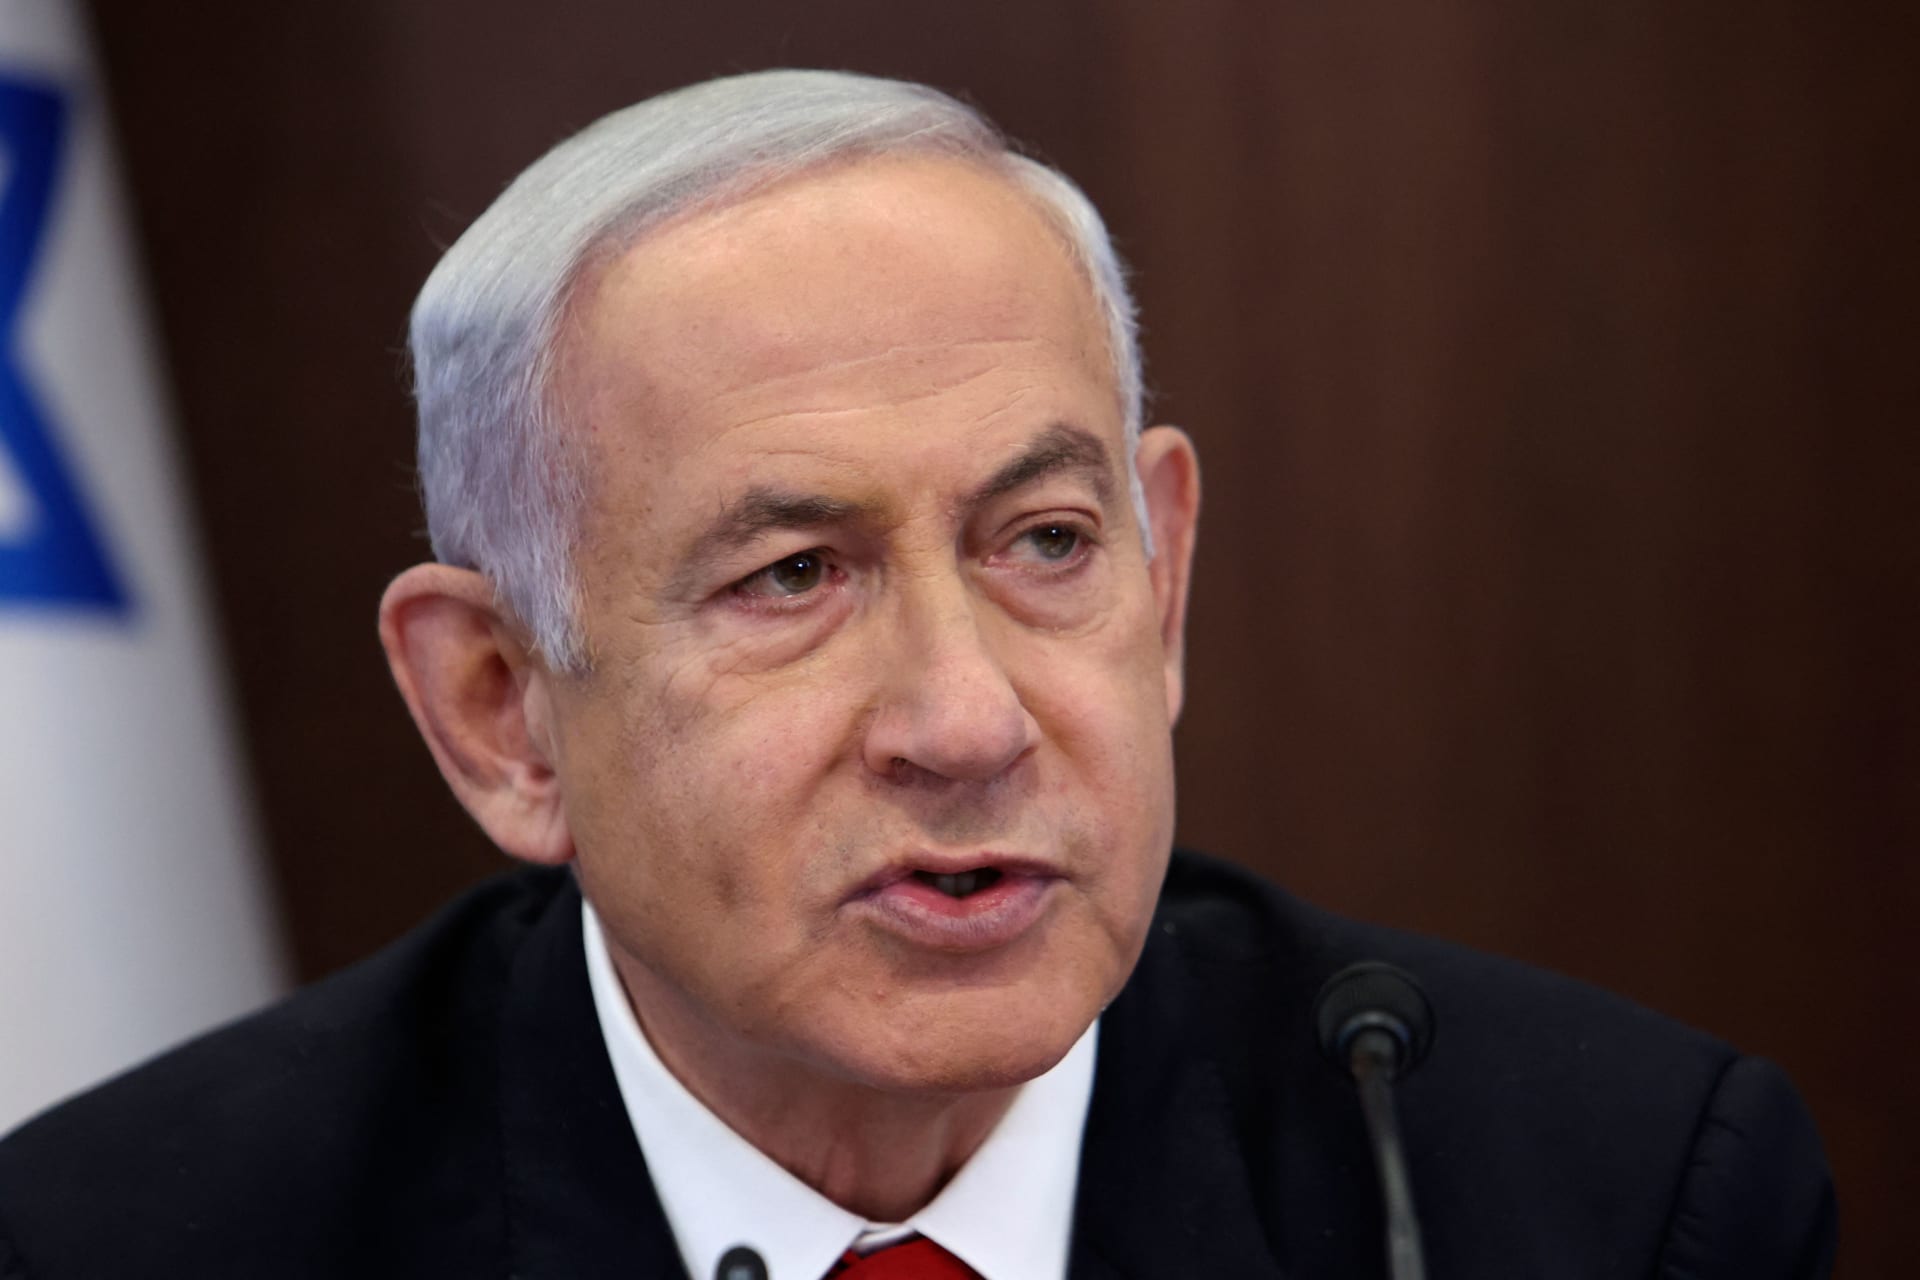  نتنياهو يرحب بتراجع وزير المالية الإسرائيلي عن تصريحه بـ"محو" قرية حوارة